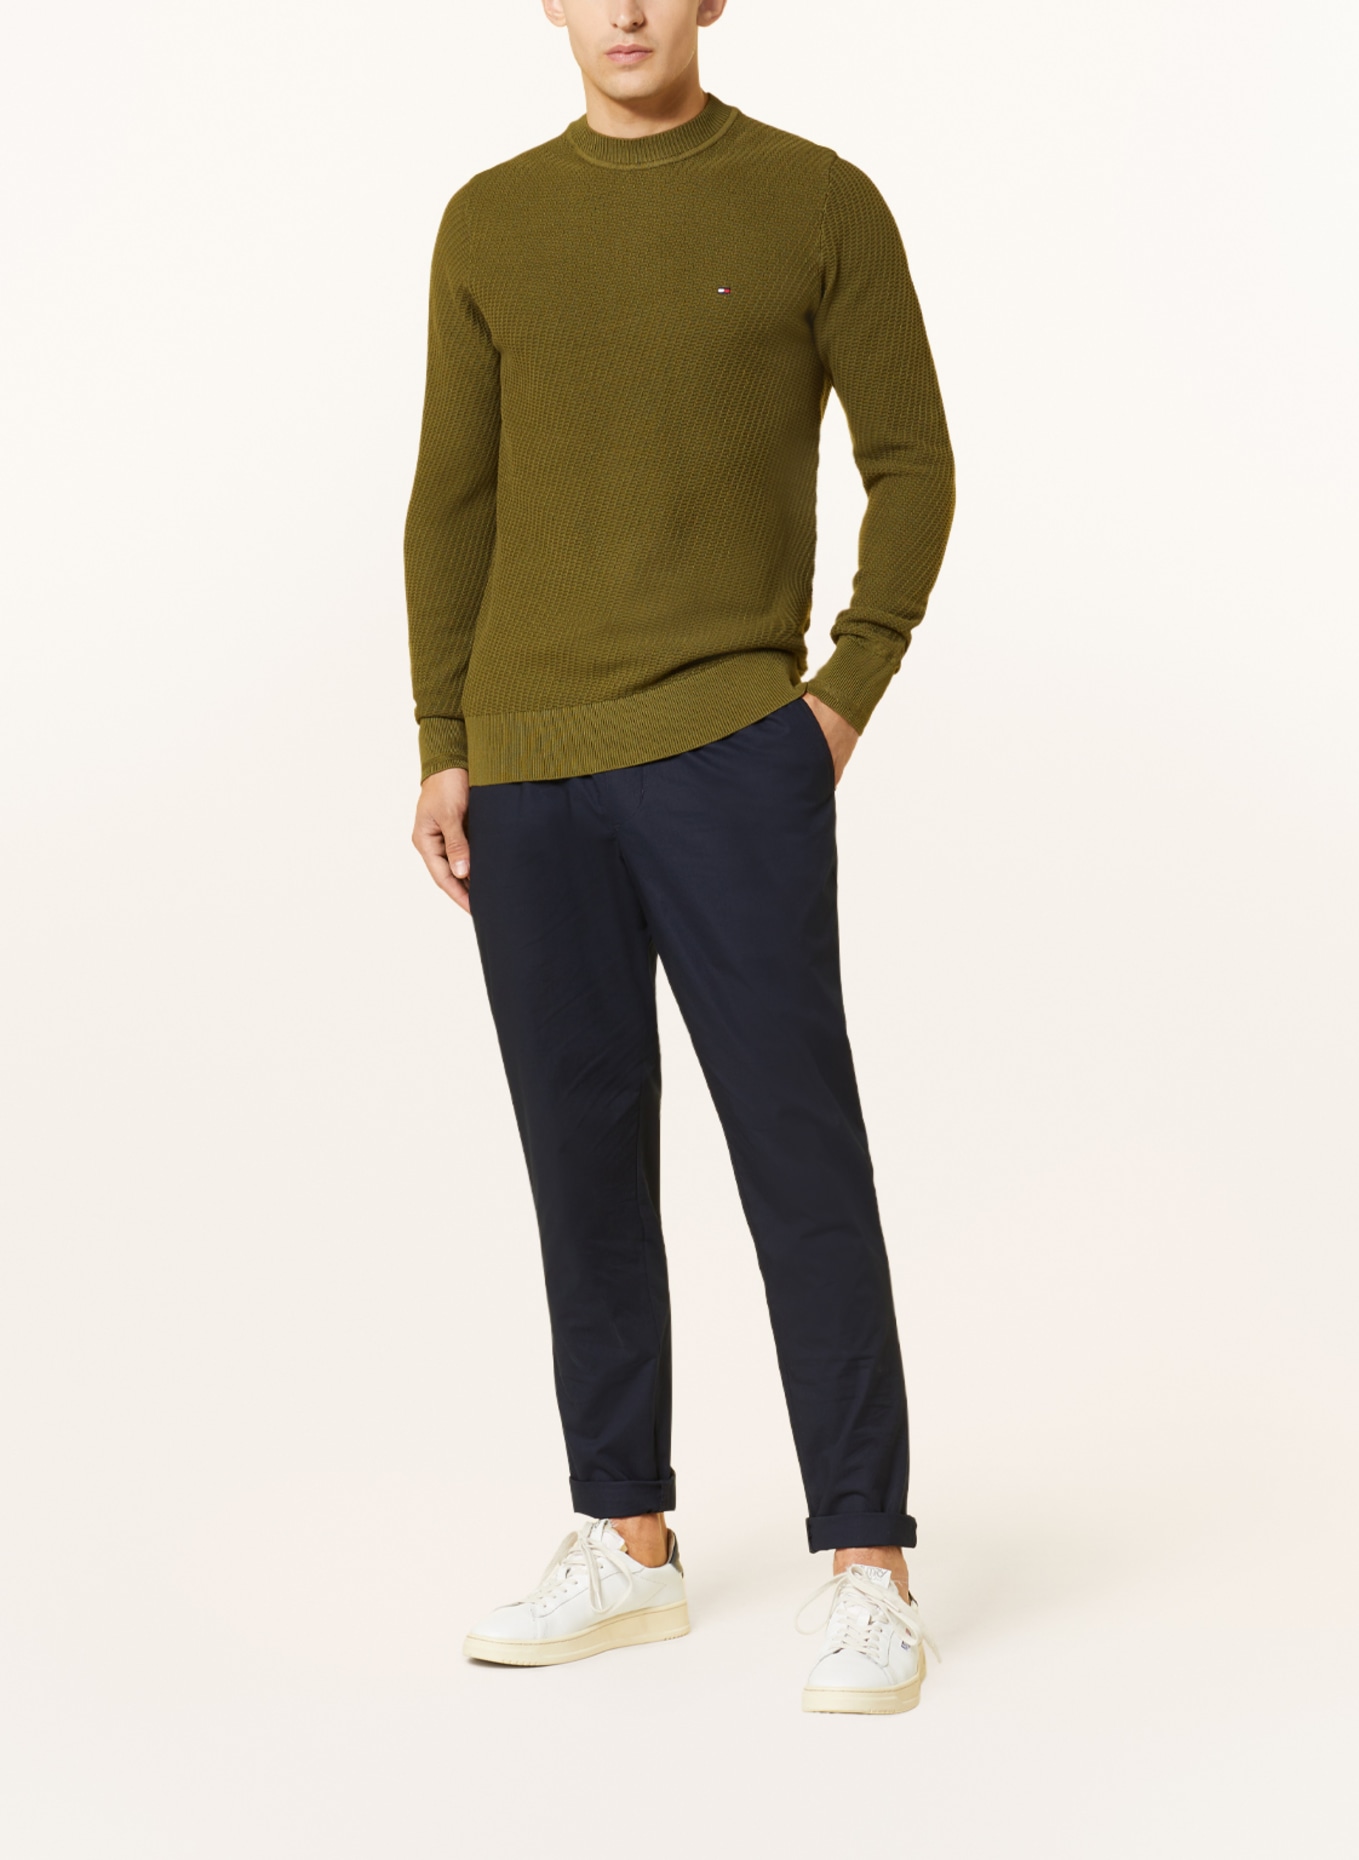 TOMMY HILFIGER Sweater, Color: OLIVE (Image 2)